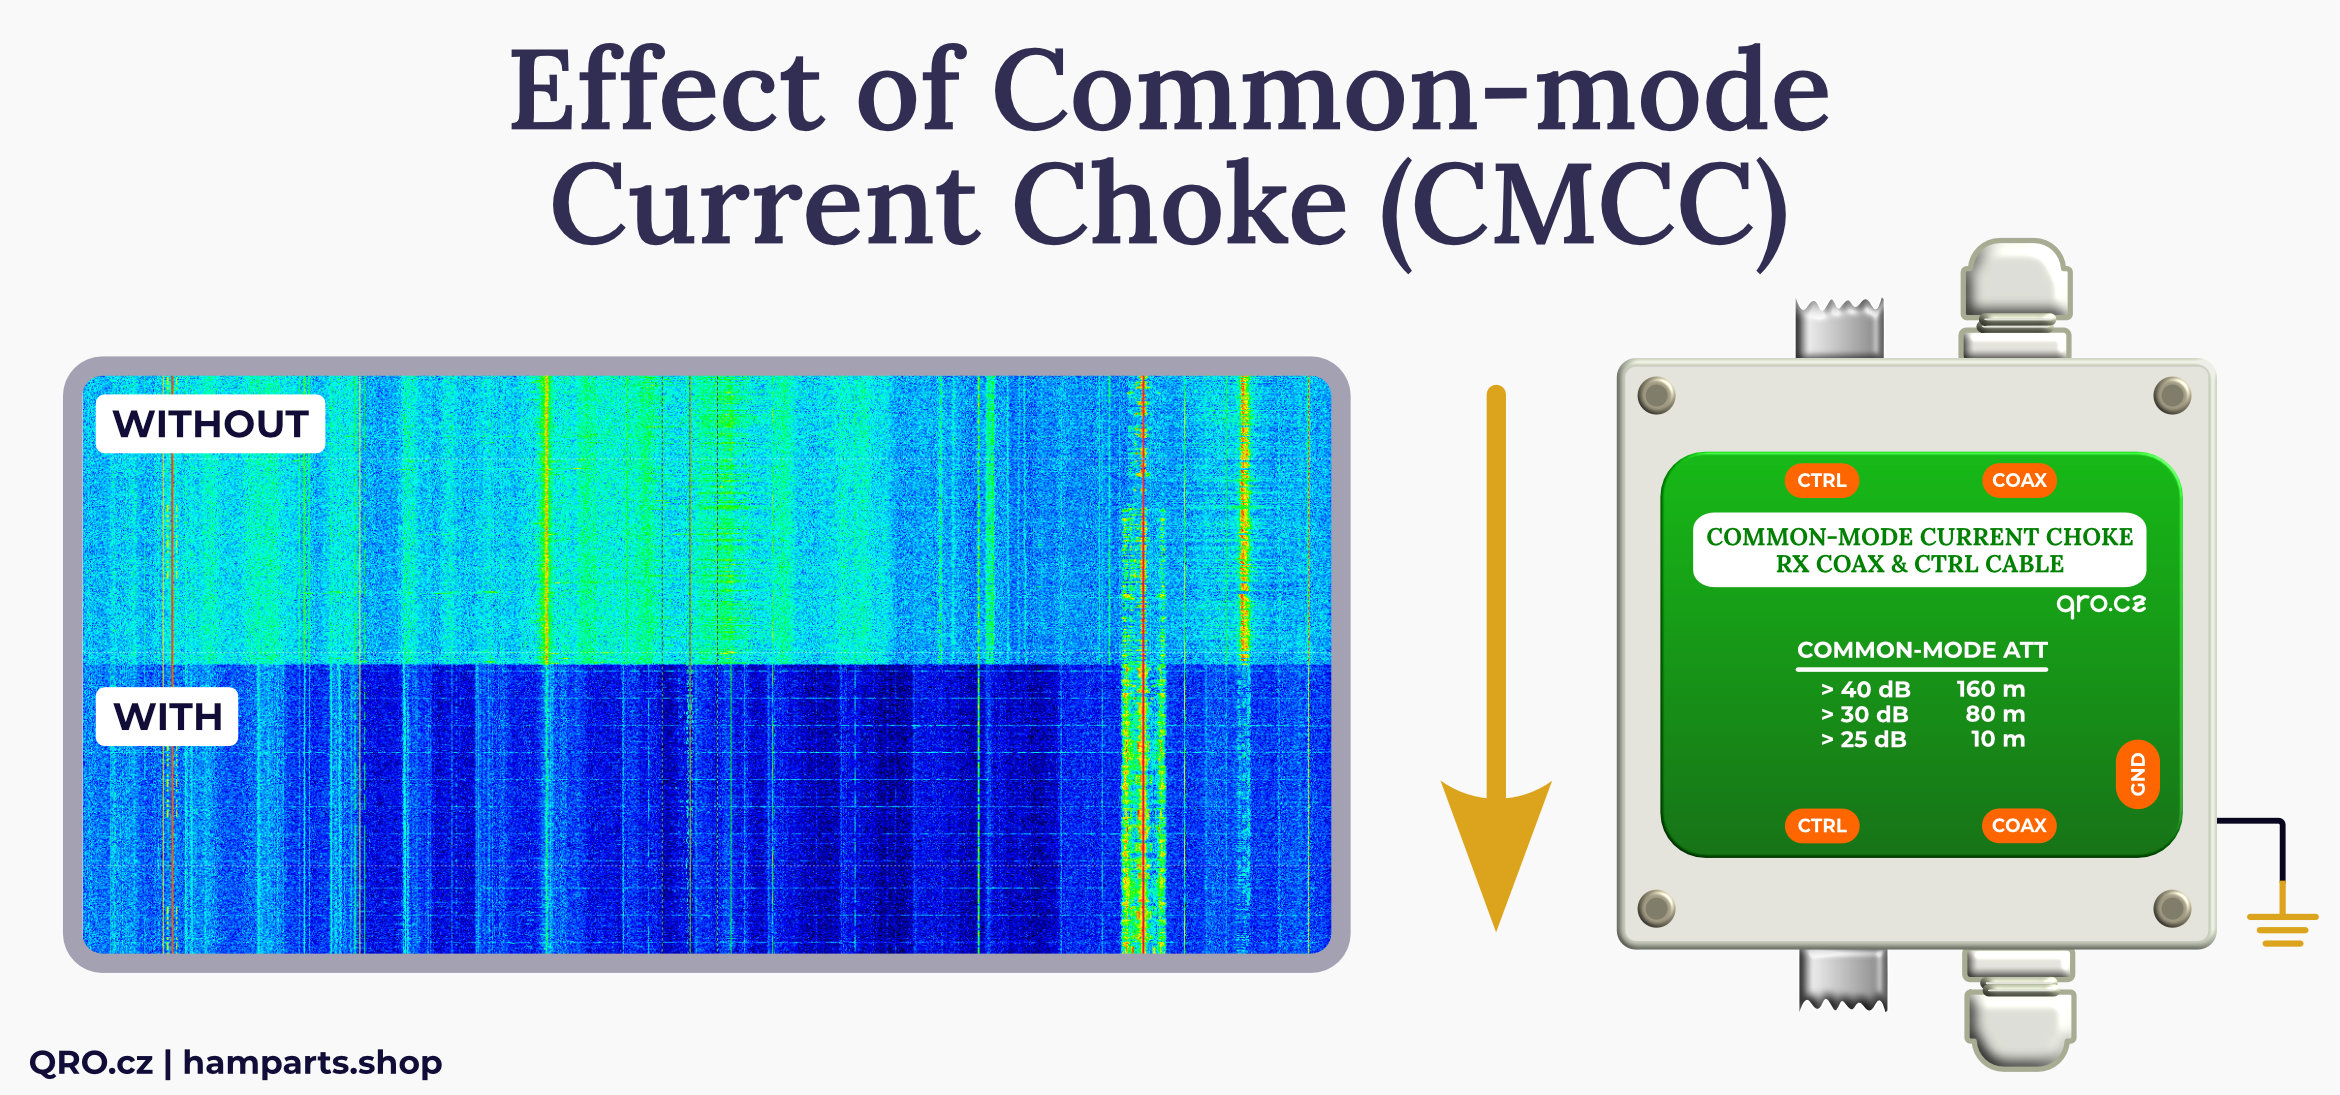 cmcc controller spectrum by qro.cz hamparts.shop